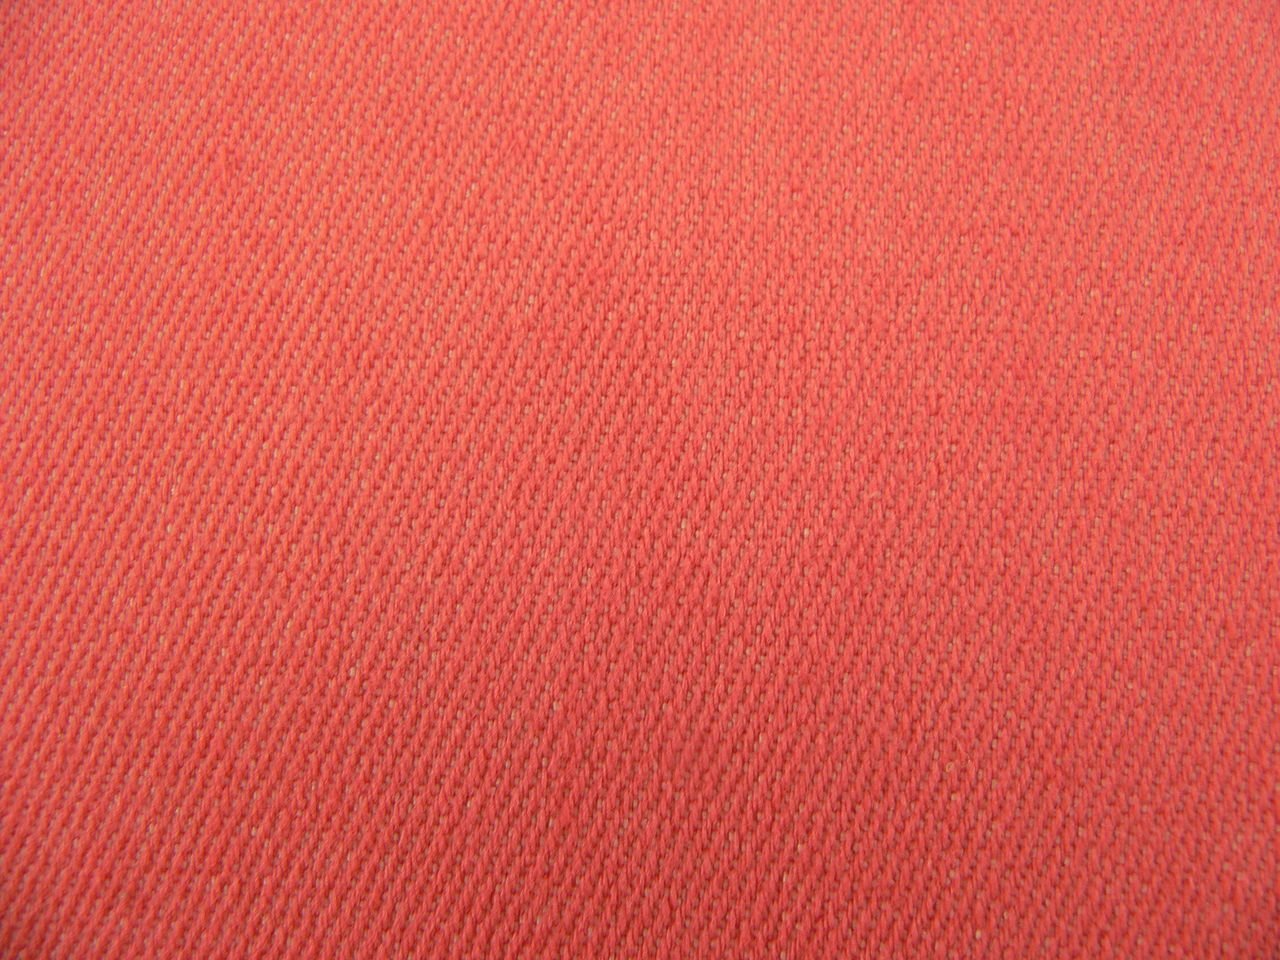 Coral цвет. Ткань кораллового цвета. Коралловый велюр. Текстура ткани. Красная джинсовая ткань.